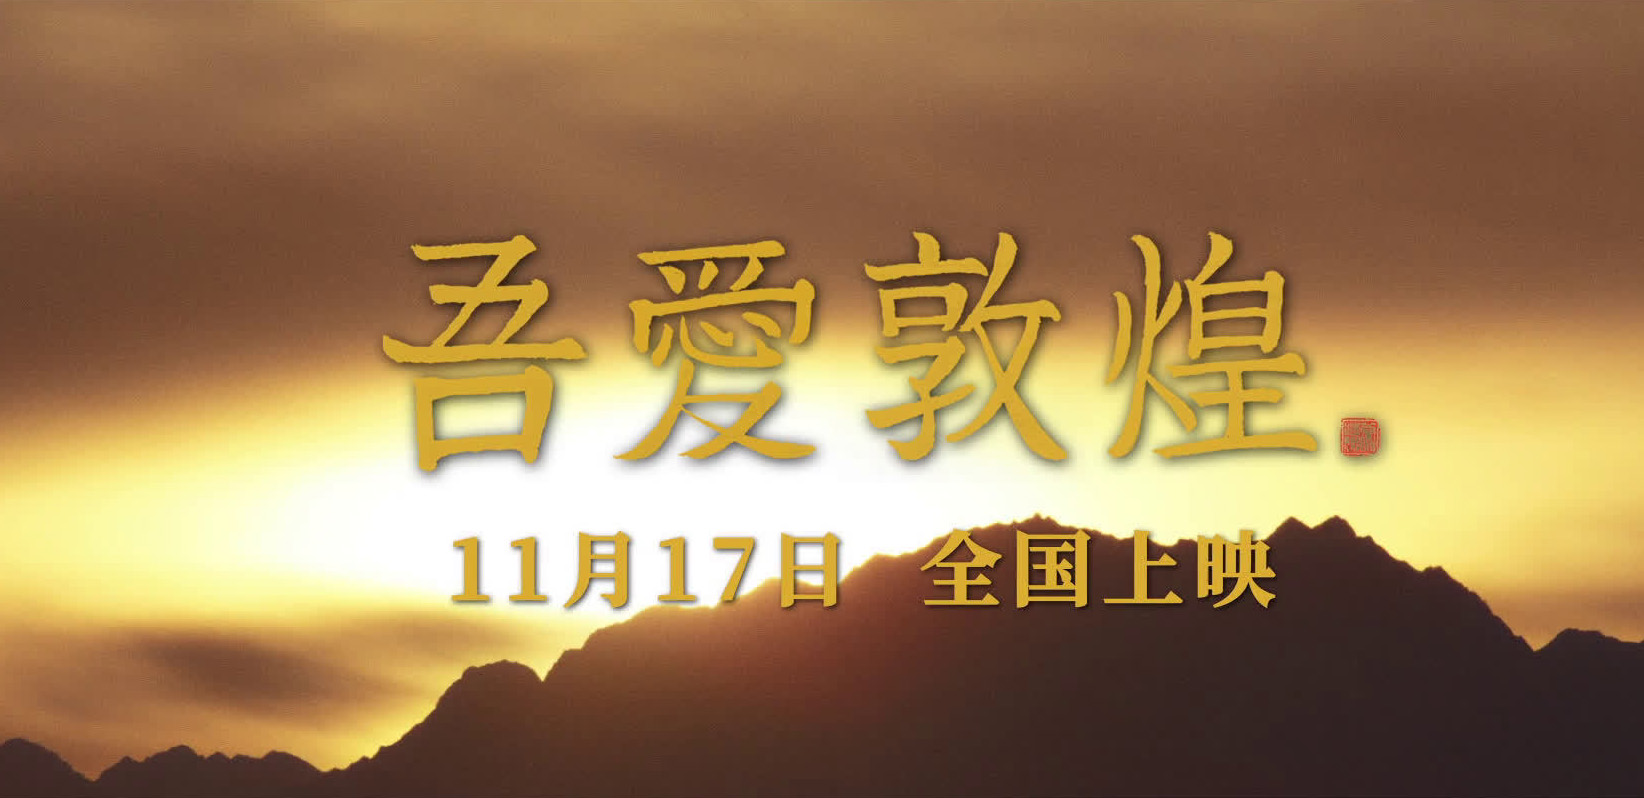 电影《吾爱敦煌》定档11月17日上映